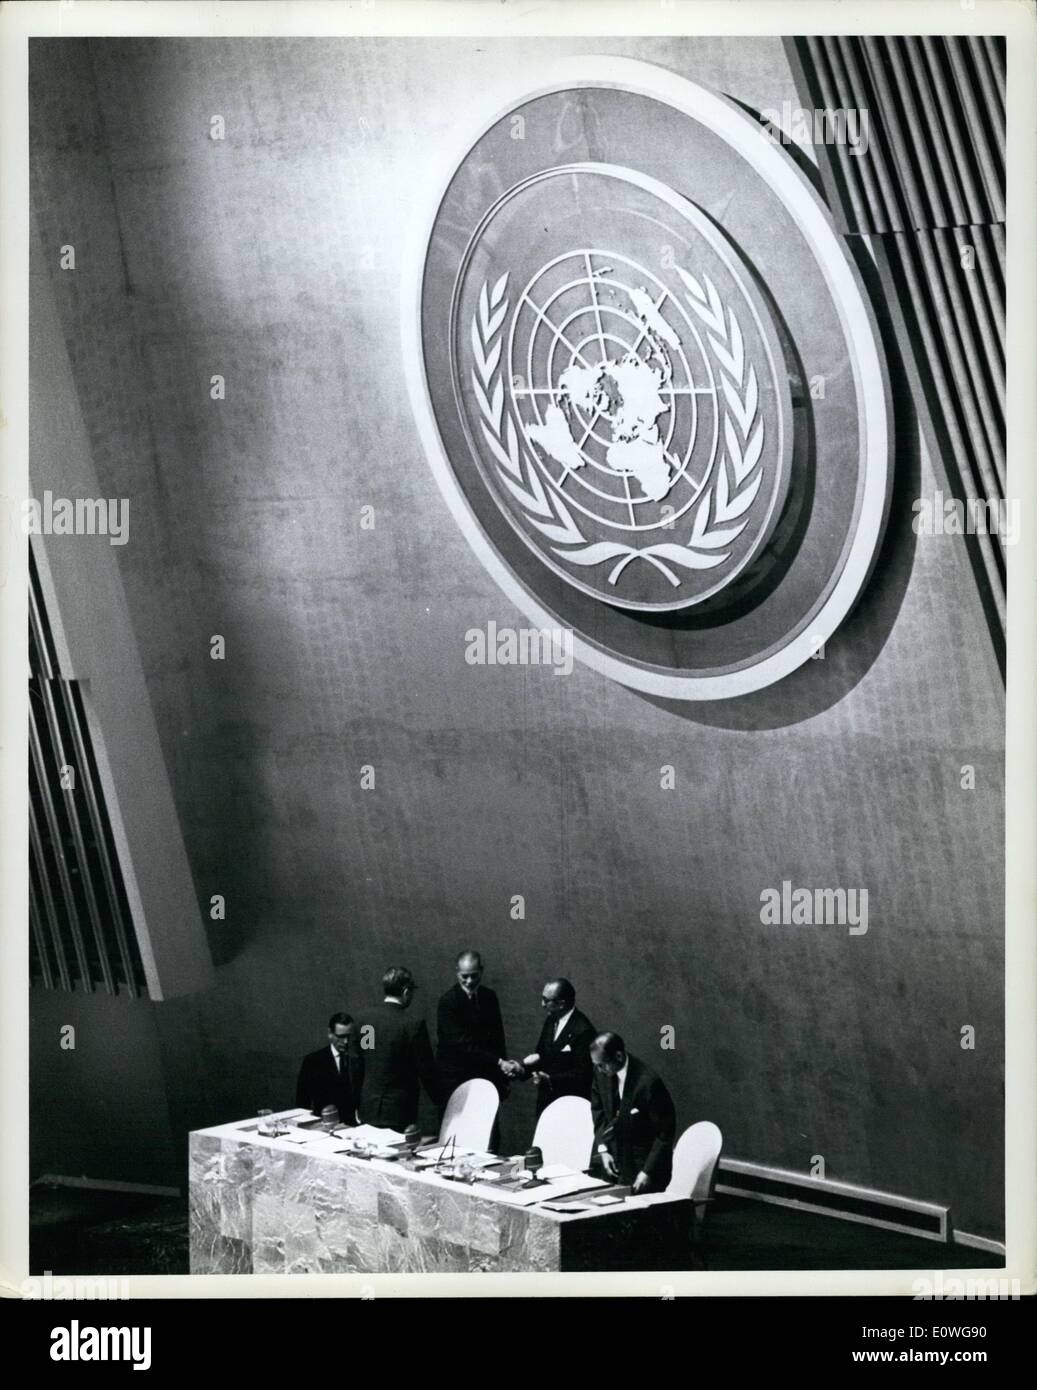 Sett. 09, 1962 - ONU Assemblea generale apre la diciassettesima sessione regolare delle Nazioni Unite la NY Seventheenth Sessione ordinaria dell'Adunata aperto questo pomeriggio presso la sede delle Nazioni Unite, e ha eletto come suo Presidente ambasciatore Muhammad Zafrulla Khan, del Pakistan, il risultato delle elezioni era di 72 voti per Ambassador Khan, 27 voti per Prof G.P. Malalasekera (Caylon), un voto per il signor Mongi Slim (Tunisia) e 4 scrutini non valido. Non vi erano abatentions Foto Stock